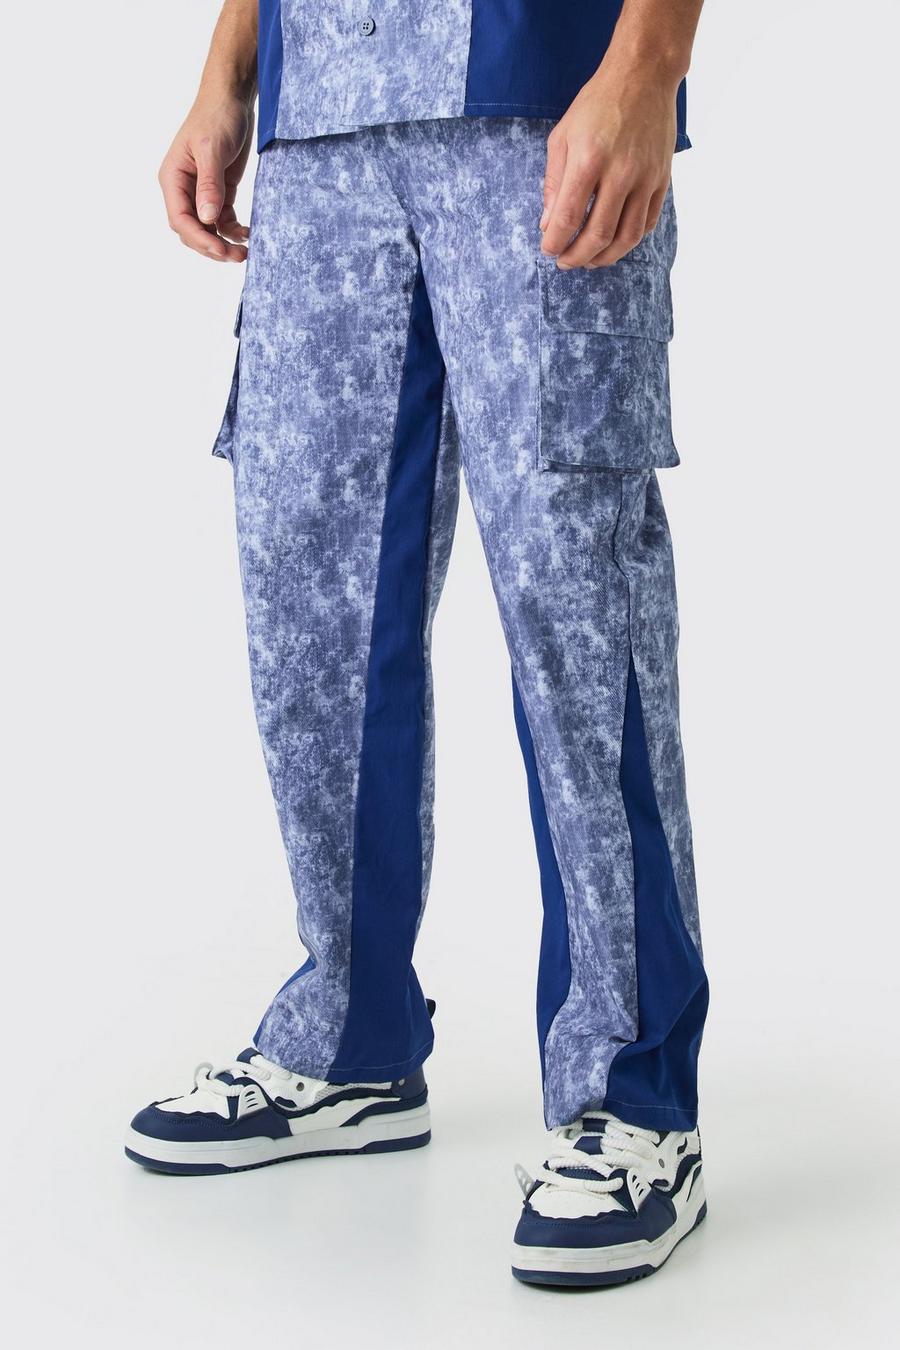 Pantaloni rilassati in fantasia militare con inserti in vita fissa, Denim-blue image number 1